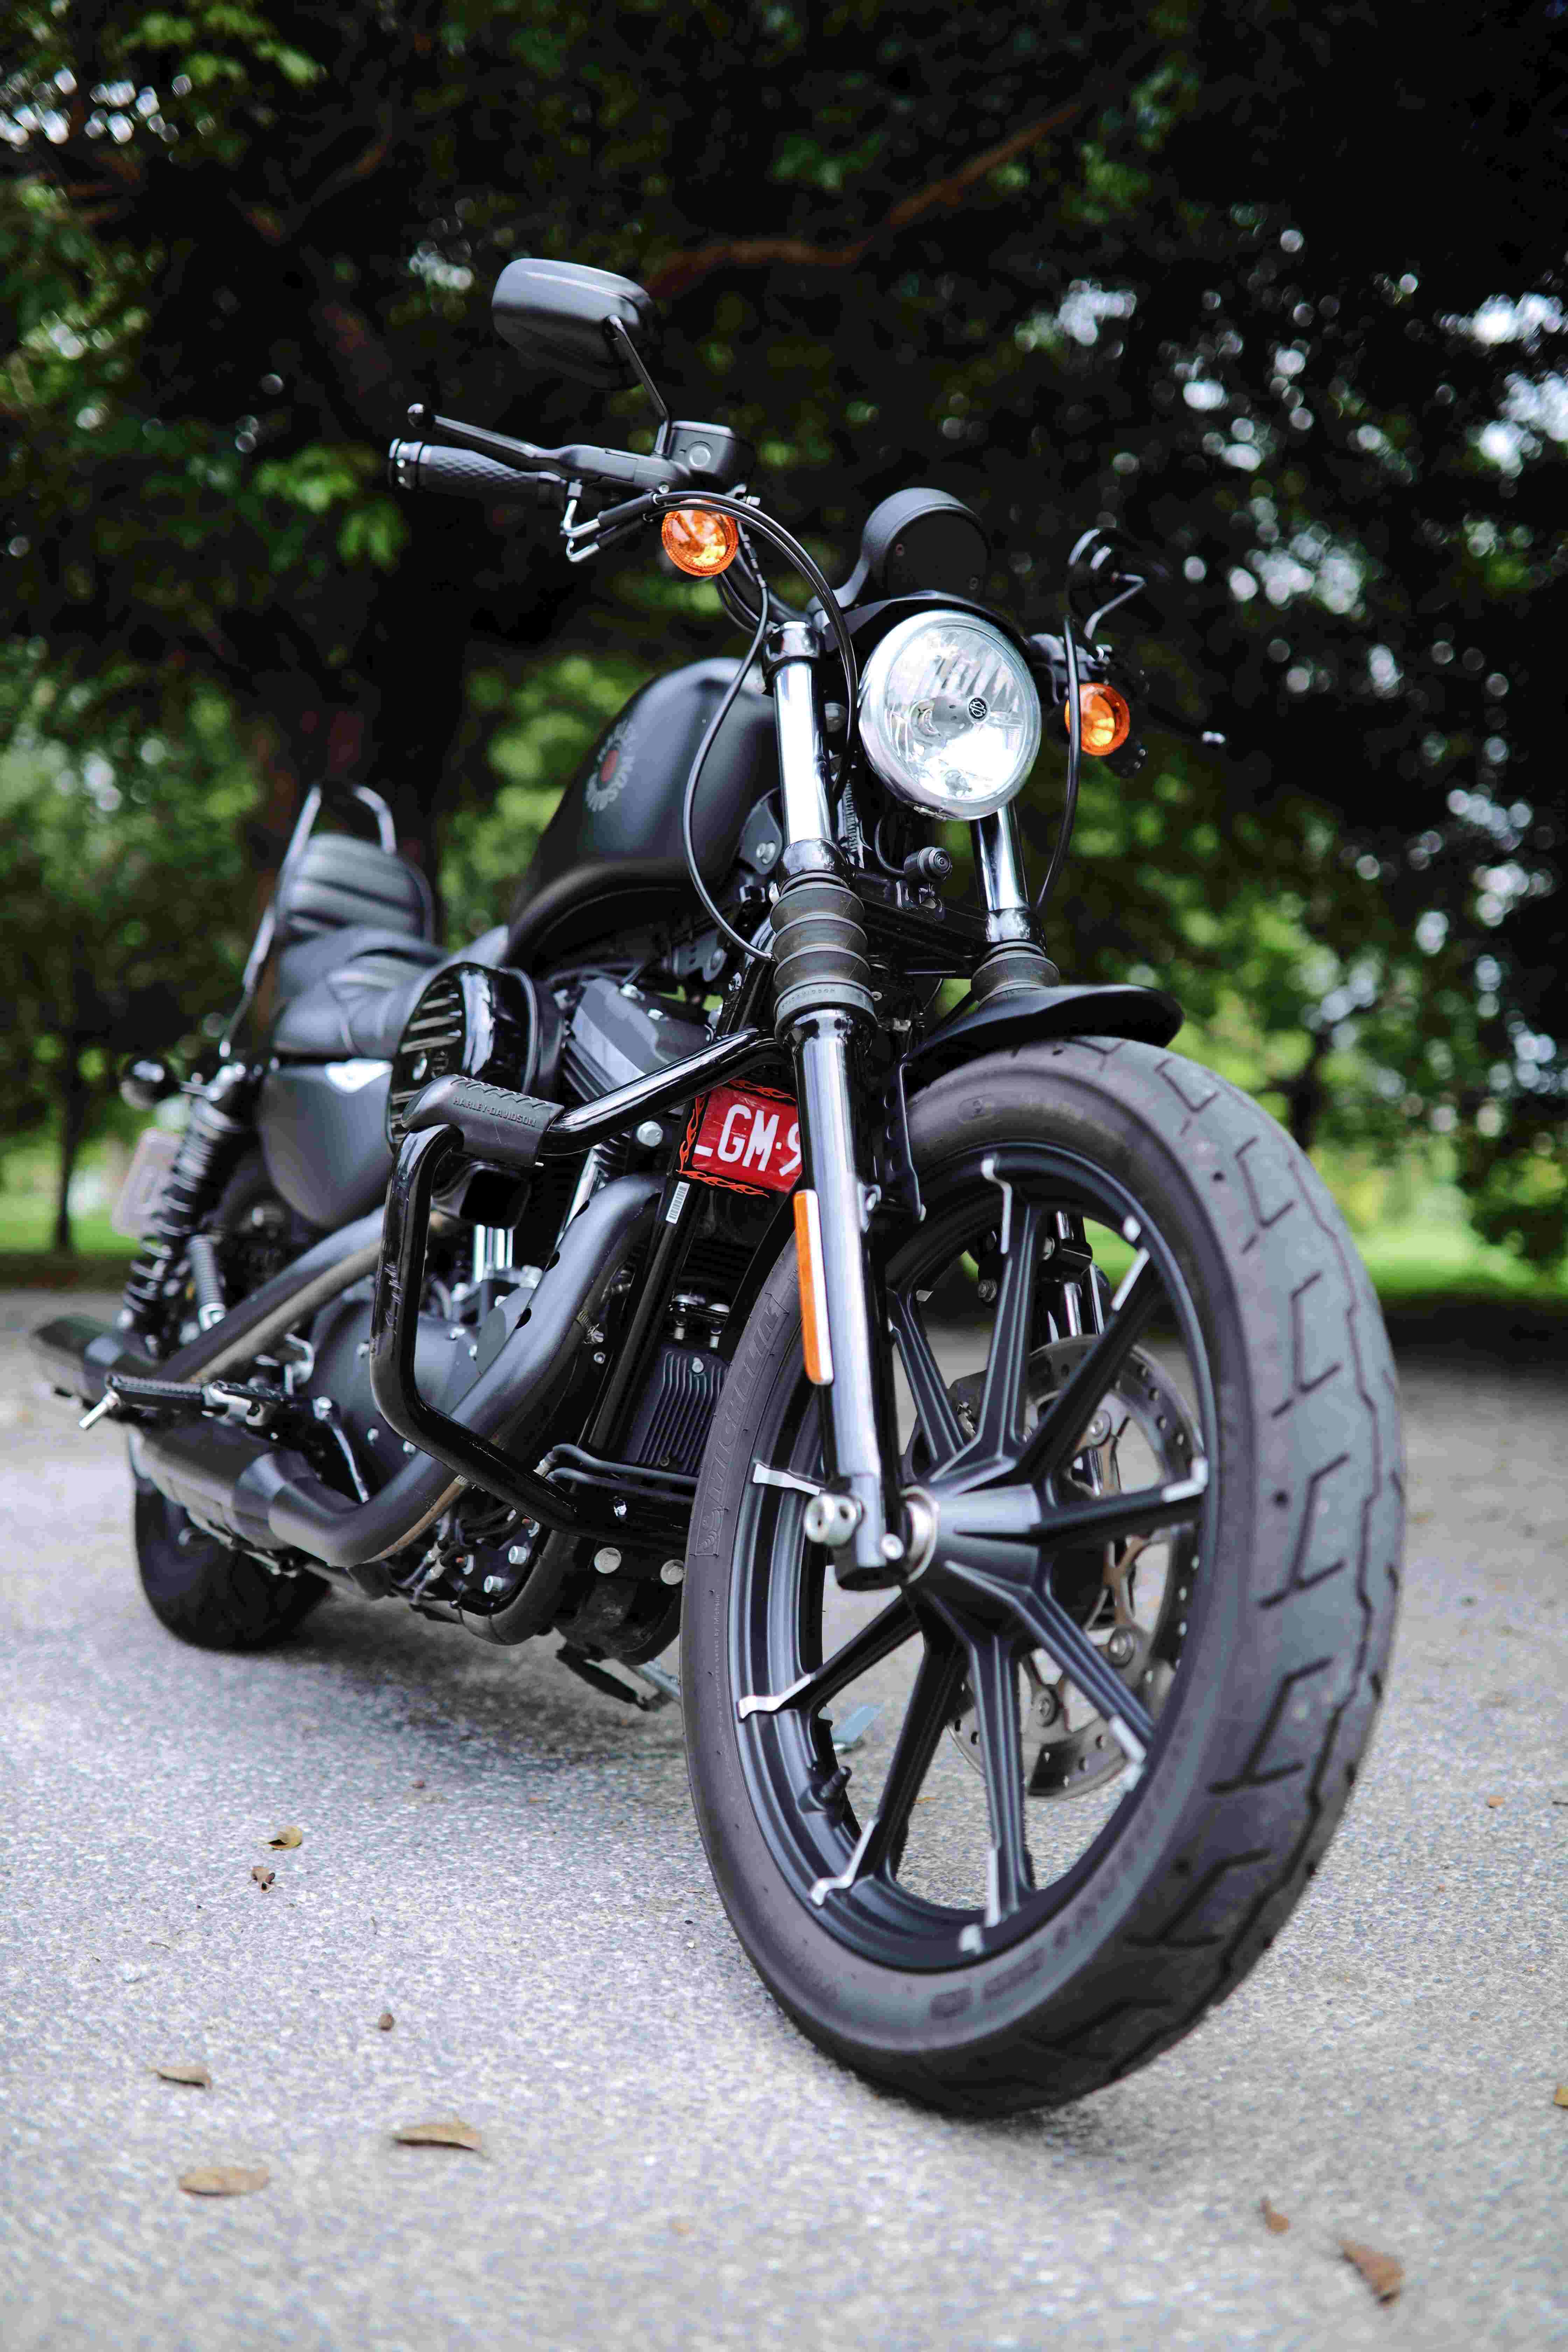 HARLEY-DAVIDSON XL883N - 中古/二手車出售中 《自售》Harley-Davidson XL883N 太古公司車 末代2021年 低里程 哈雷883 | 個人自售